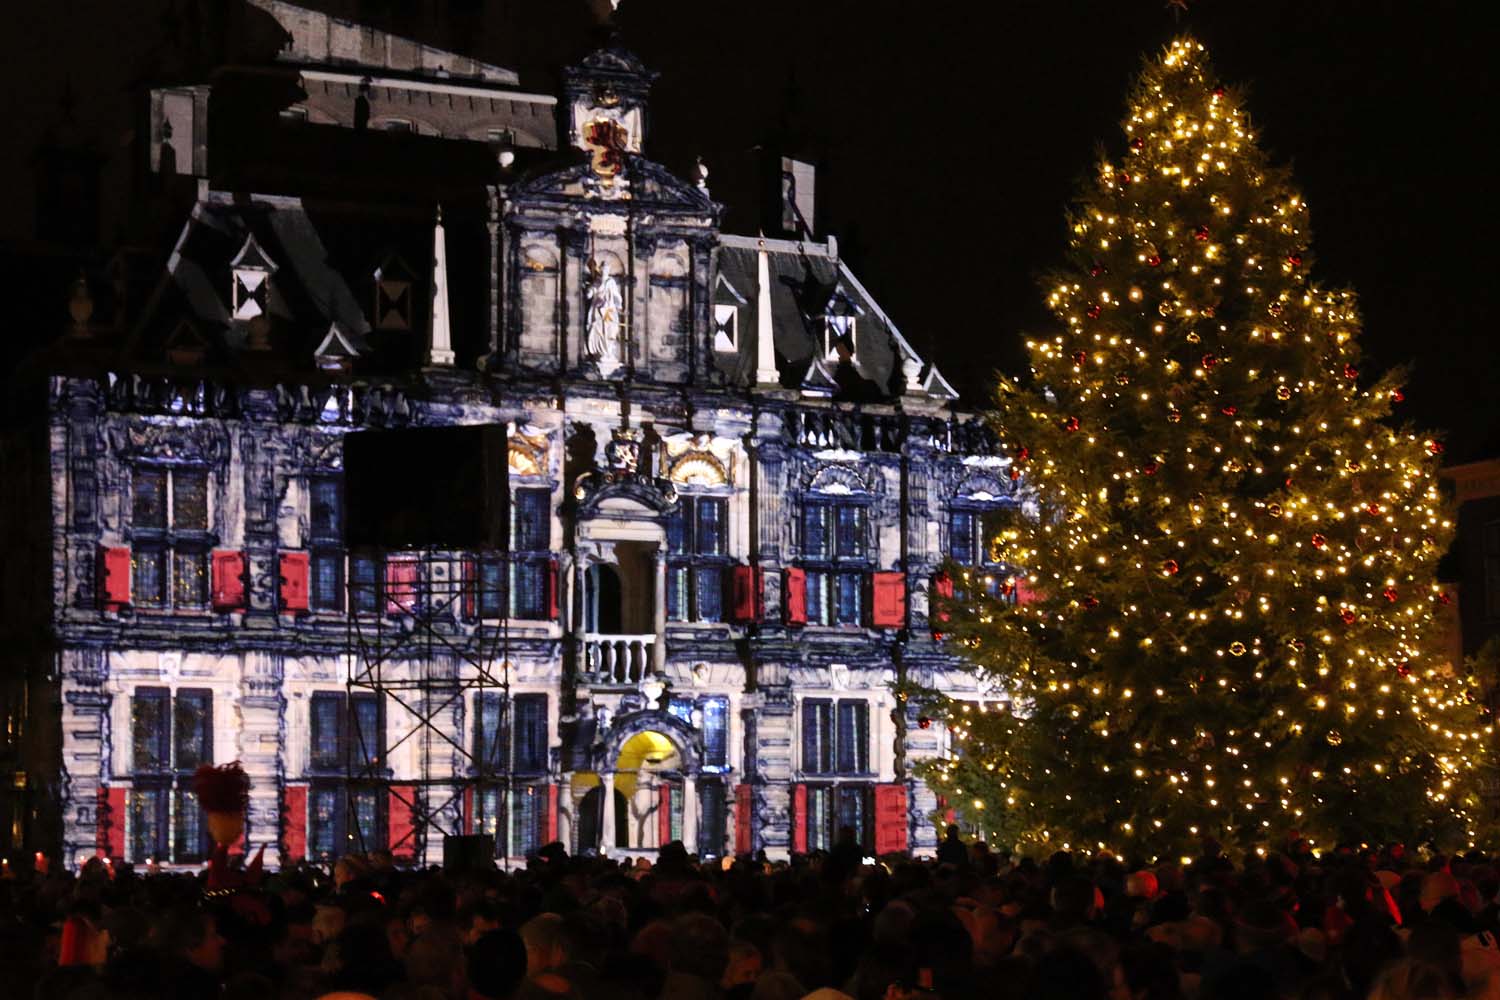 Lichtjesavond in Delft - 9 december 2014